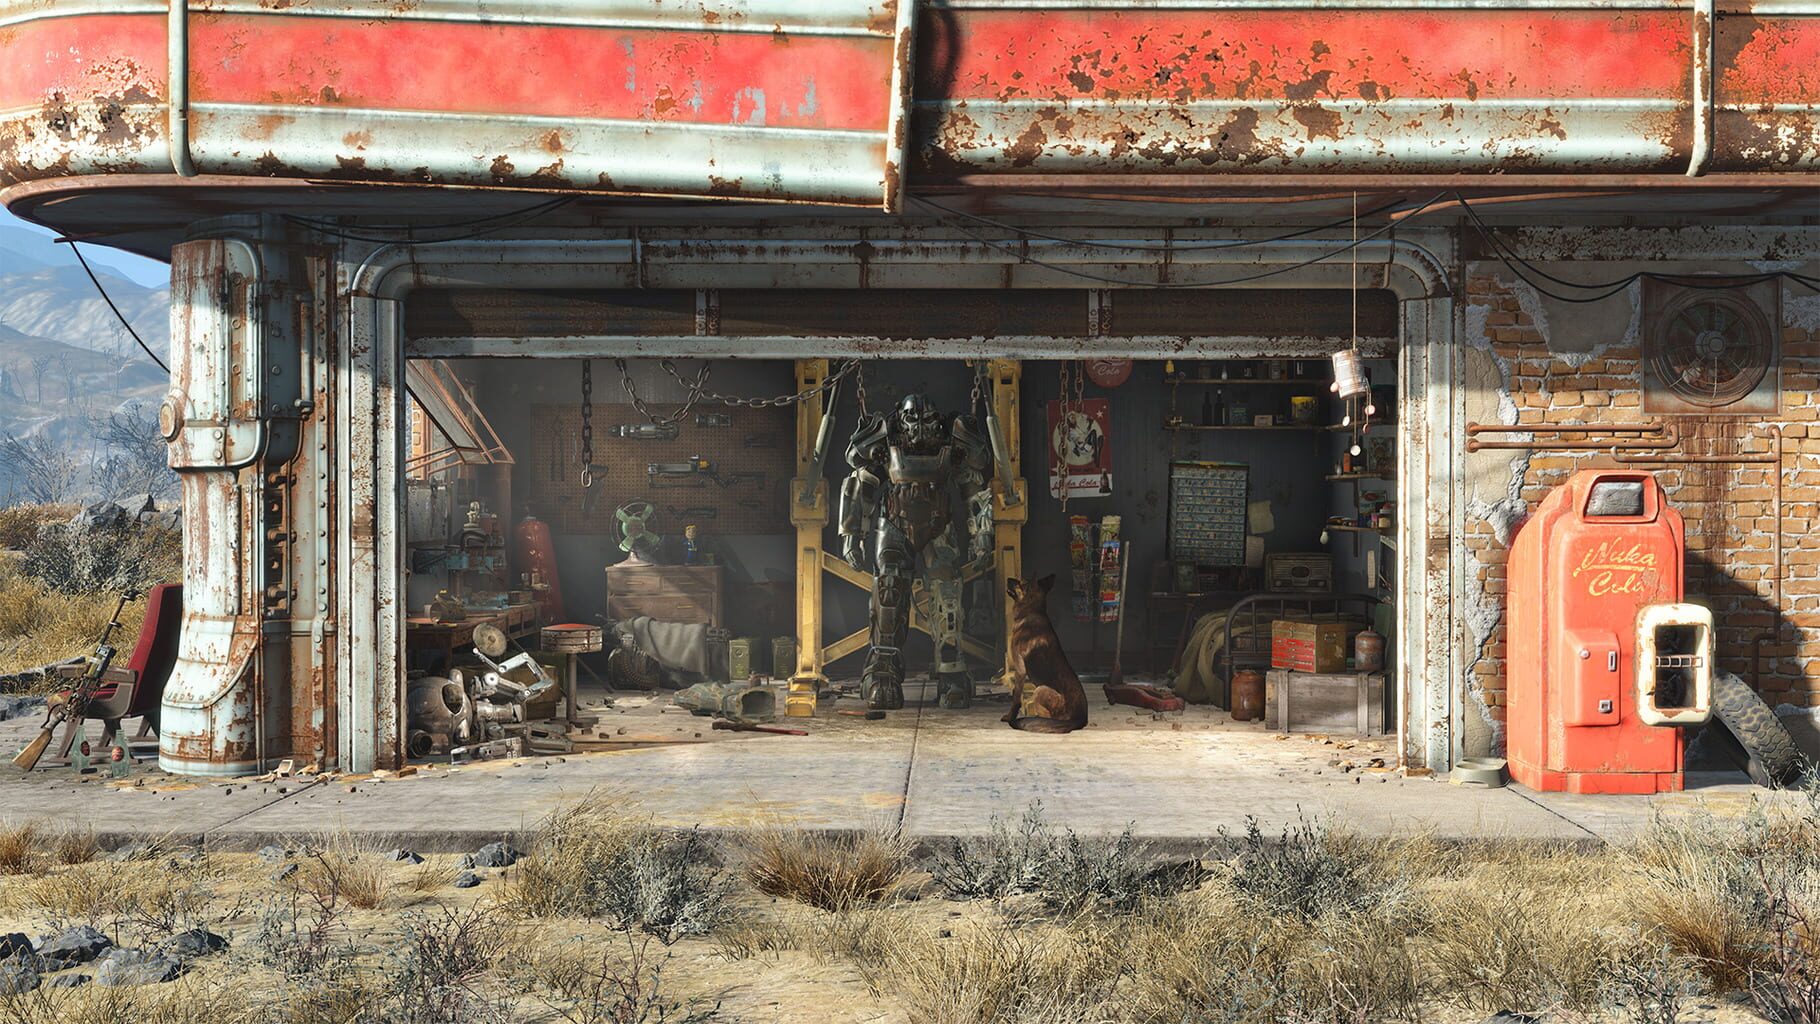 Arte - Fallout 4